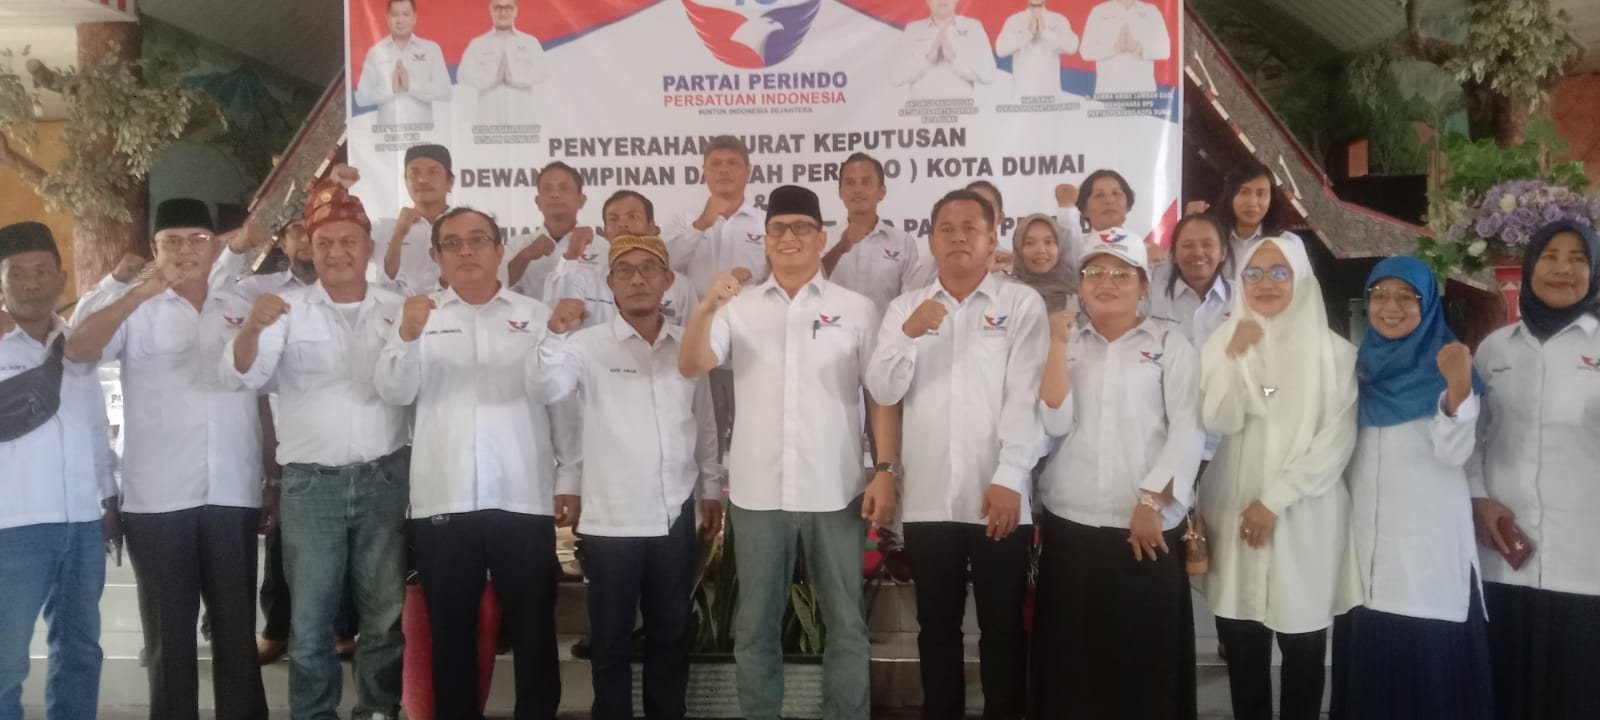 Ketua DPD Perindo Dumai Antonius Nainggolan, Perindo Siap Menangkan Kursi DPRD Kota Dumai